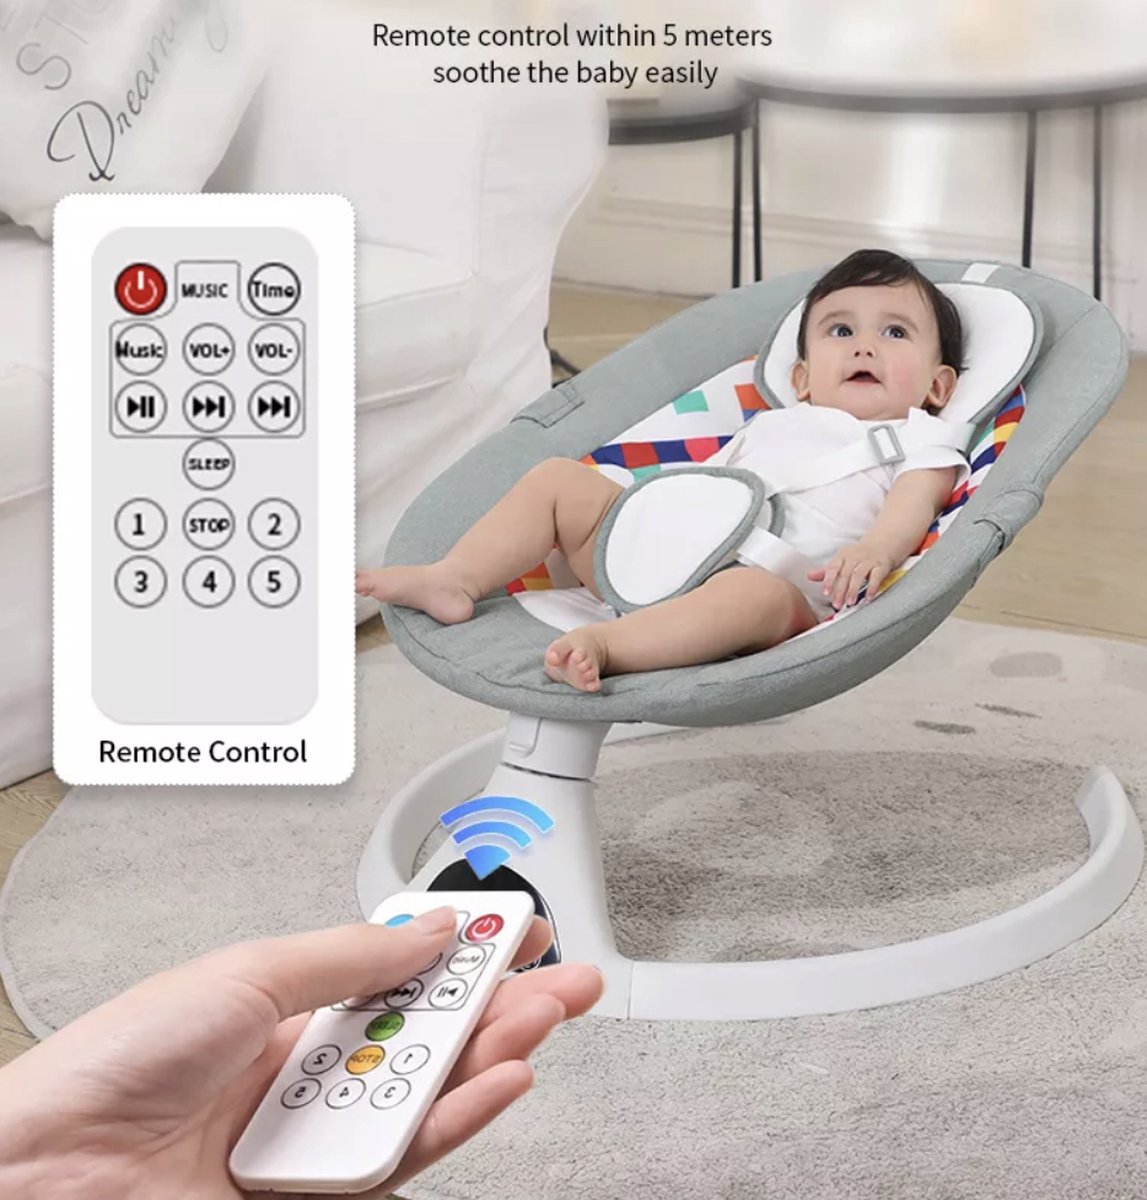 draadloze efficiëntie Uitmaken Schommelstoel baby: Vind hier de beste schommelstoeljes voor babys